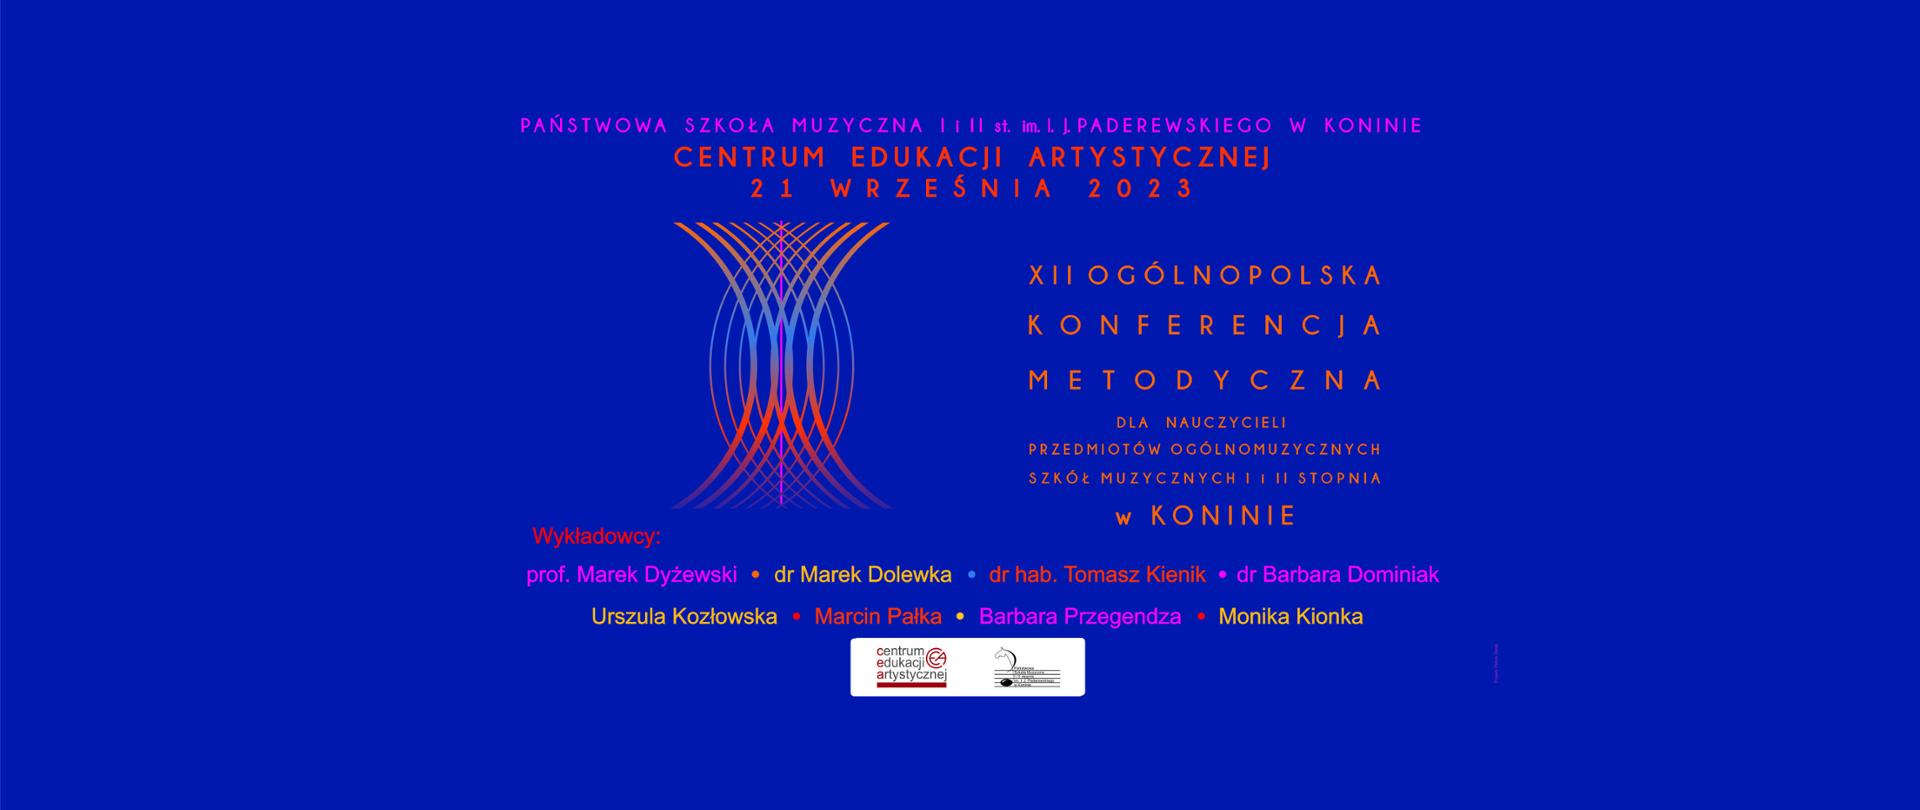 Na niebieskim tle szczegóły wydarzenia, nazwiska prowadzących, grafika przedstawiamąca fale dźwiękowe i logo CEA i PSM w Koninie